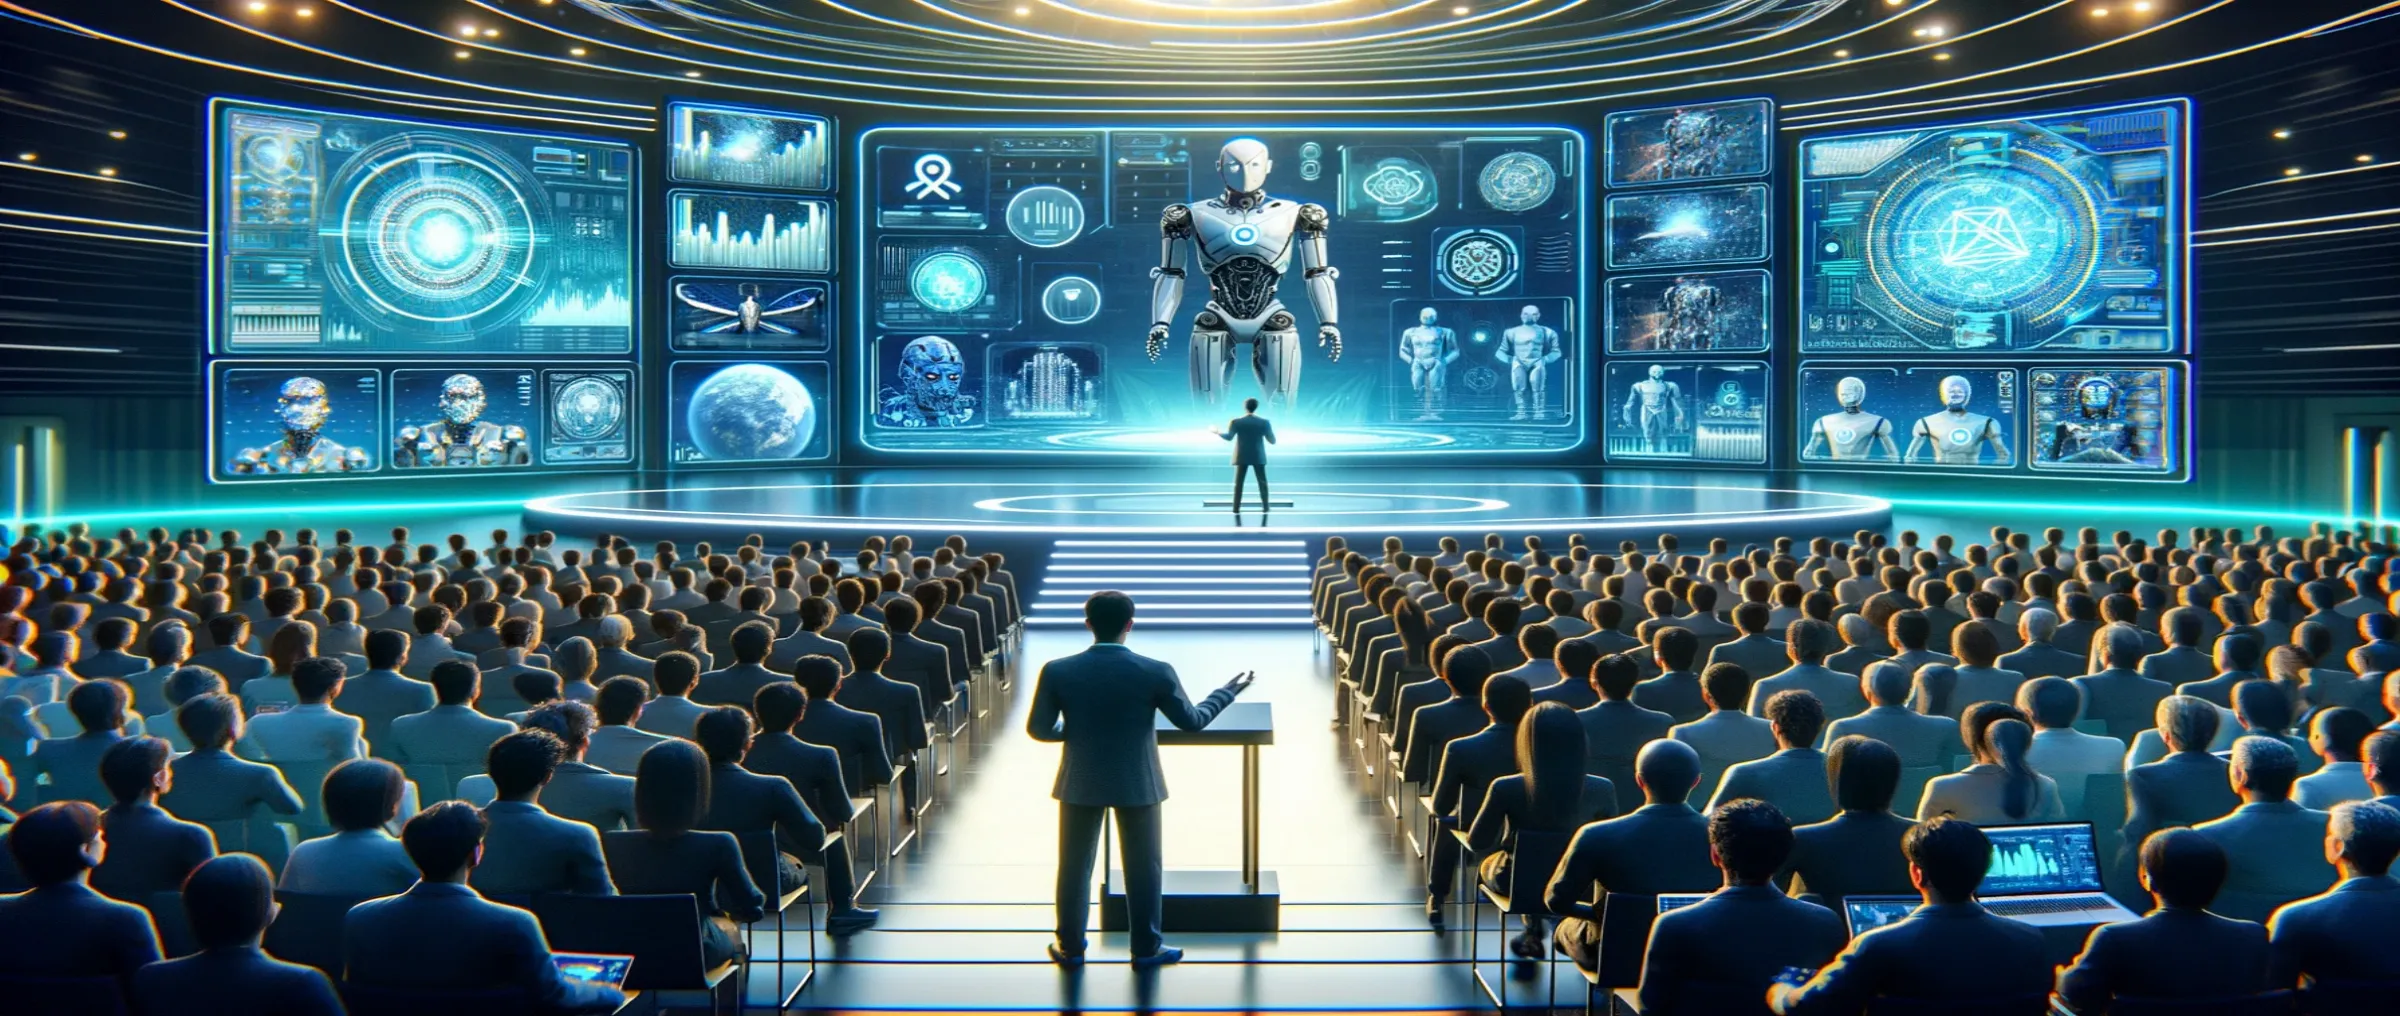 Основатель Tron выразил свои мысли по поводу робототехники, искусственного интеллекта и технологии блокчейн